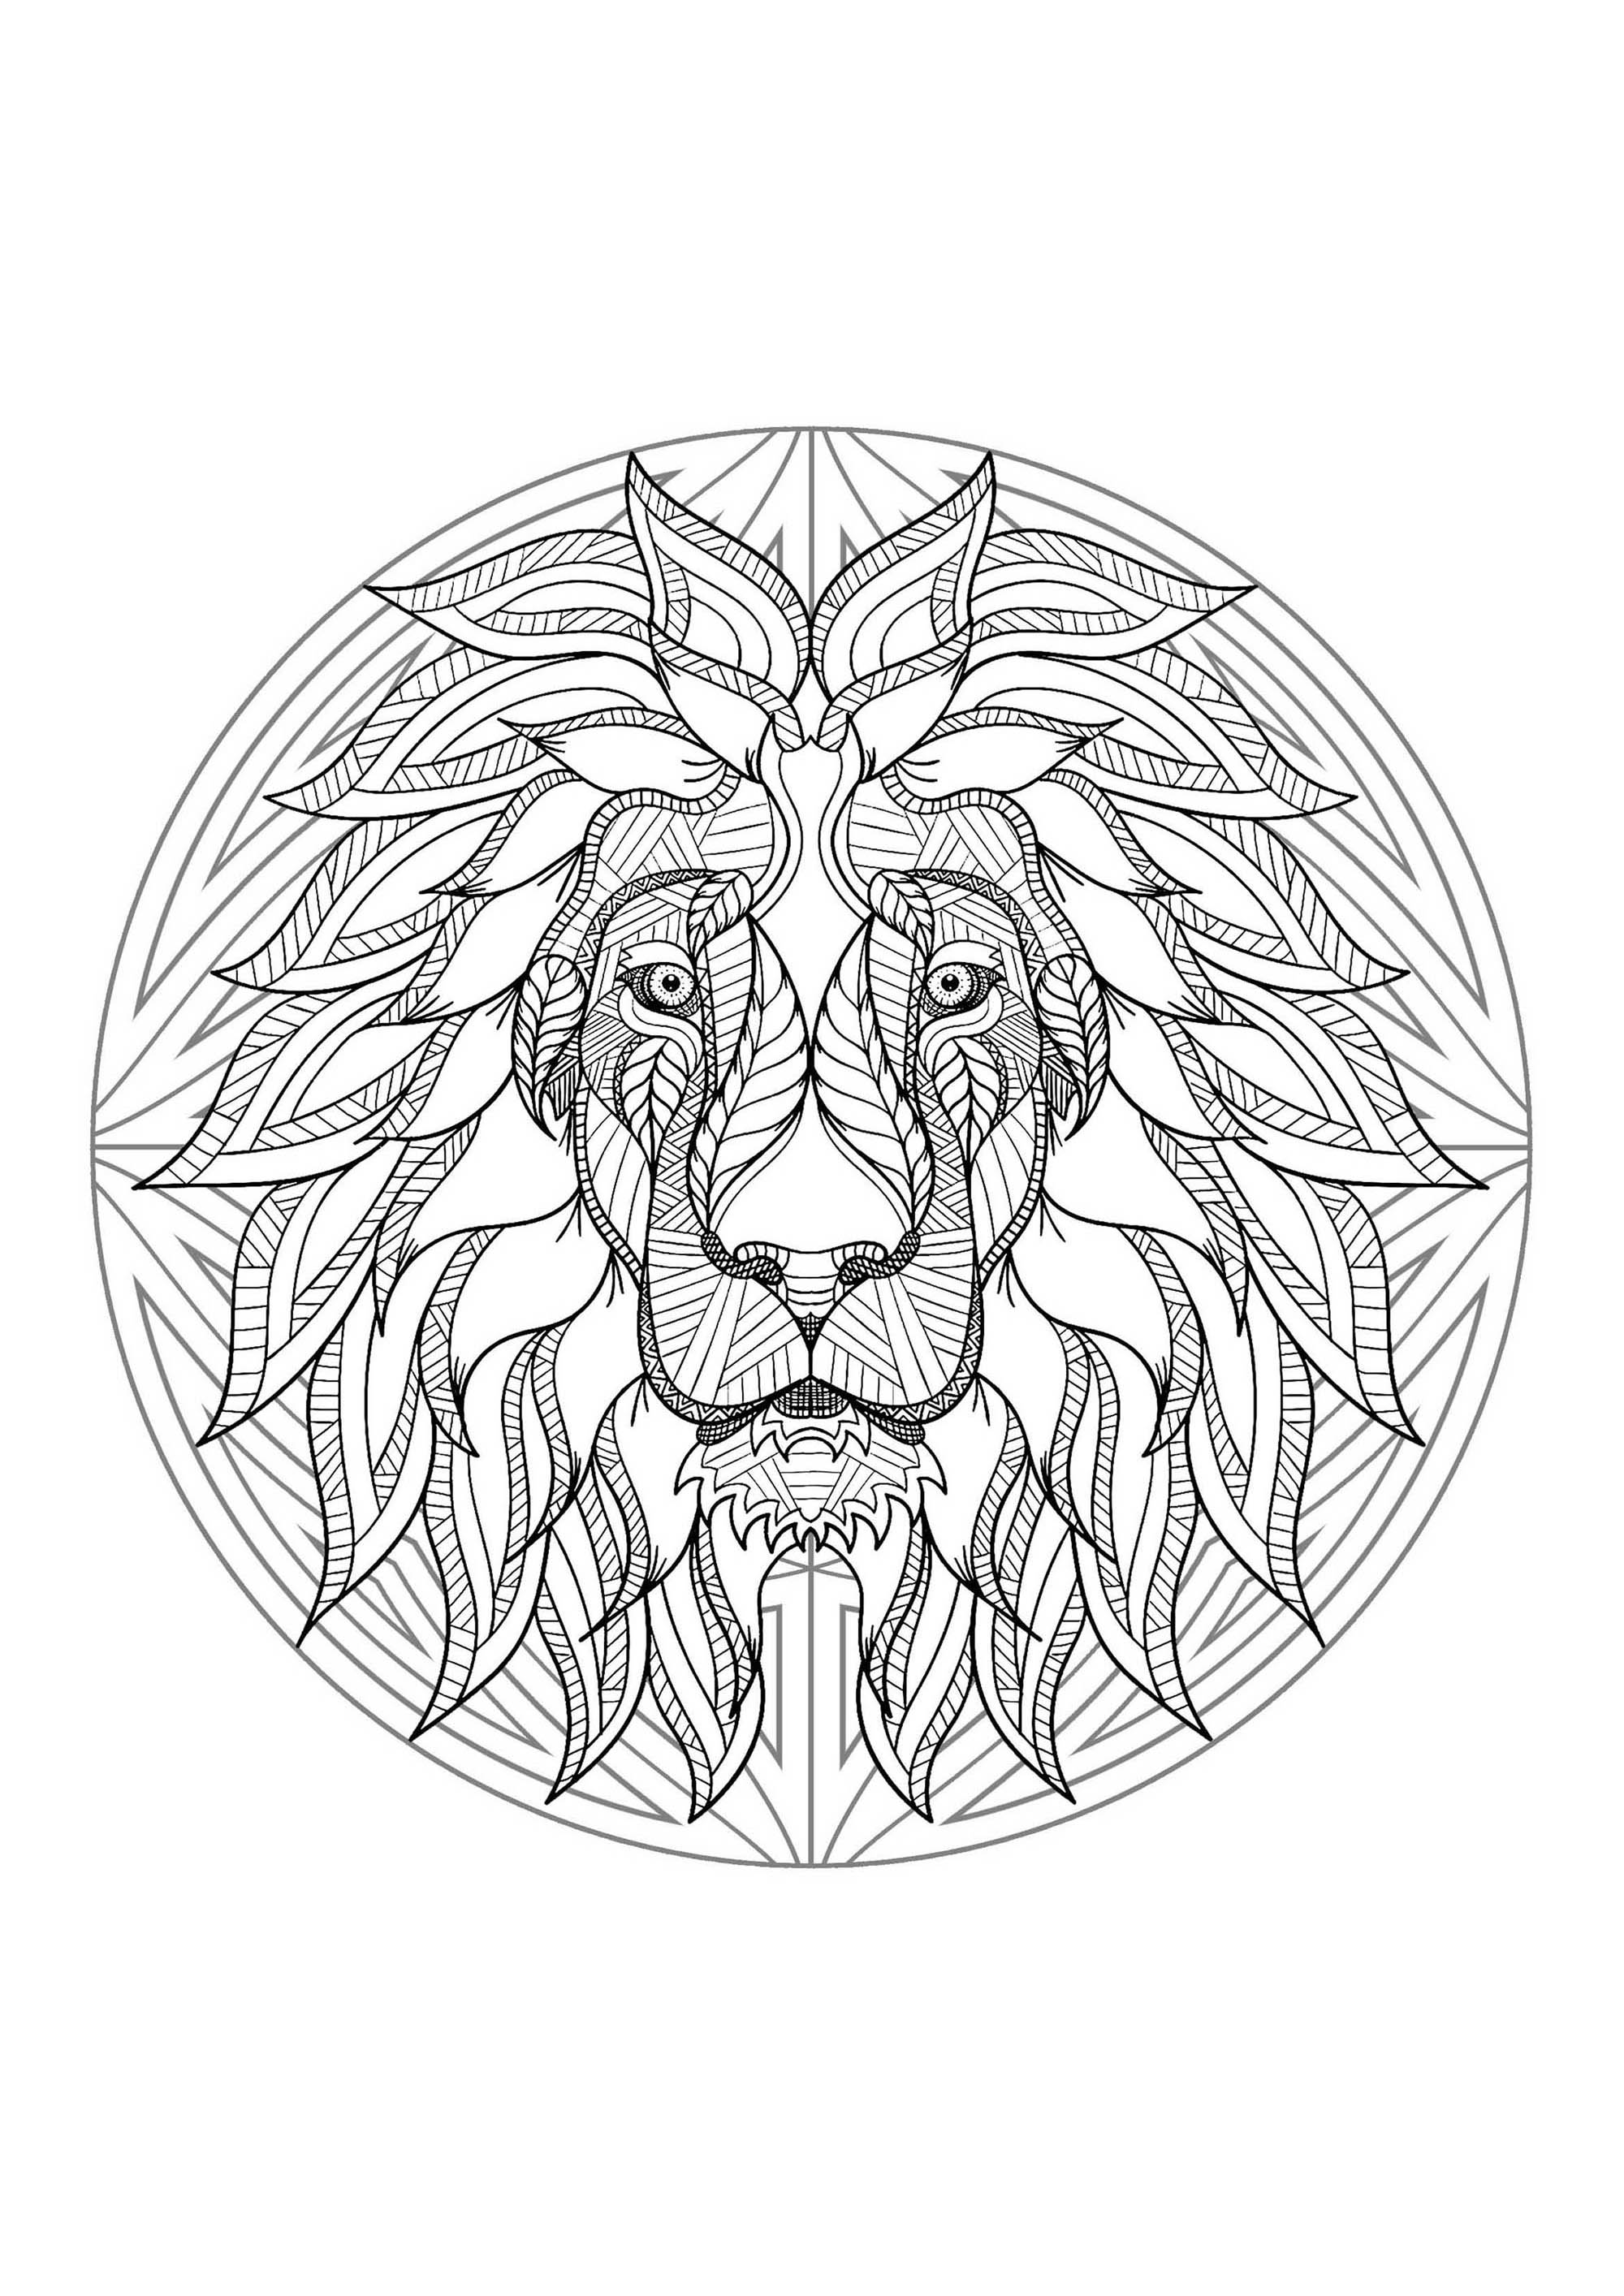 Mandala with beautiful Lion head and geometric patterns - Mandalas